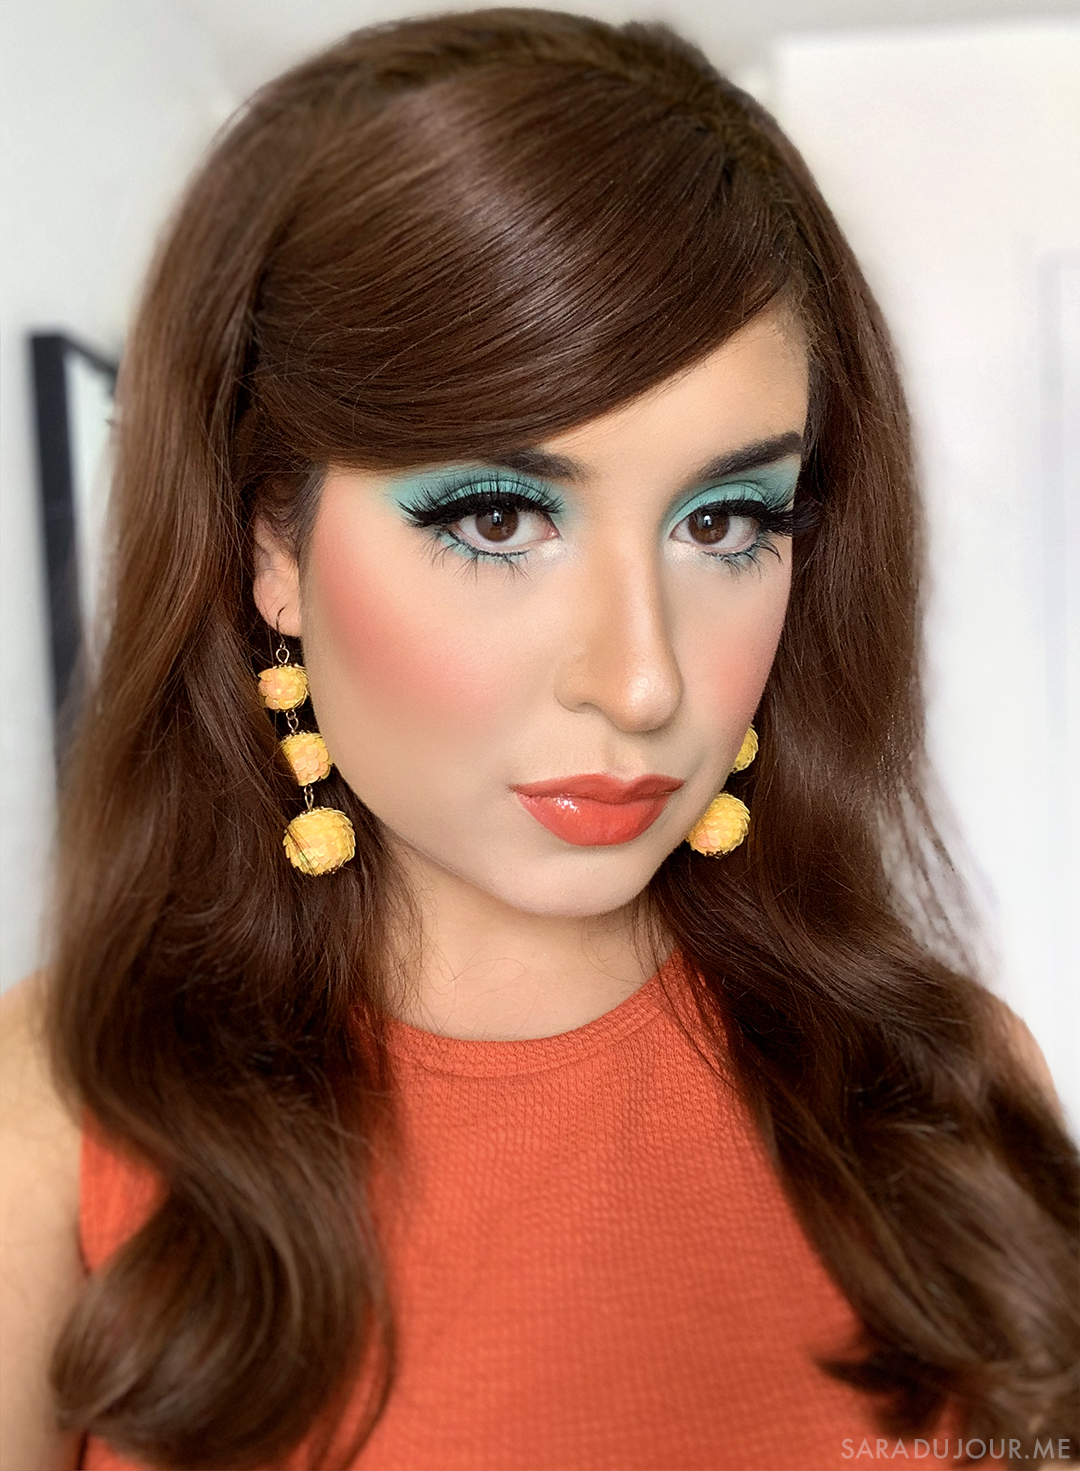 1960s Inspired Turquoise Eye Makeup | Sara du Jour